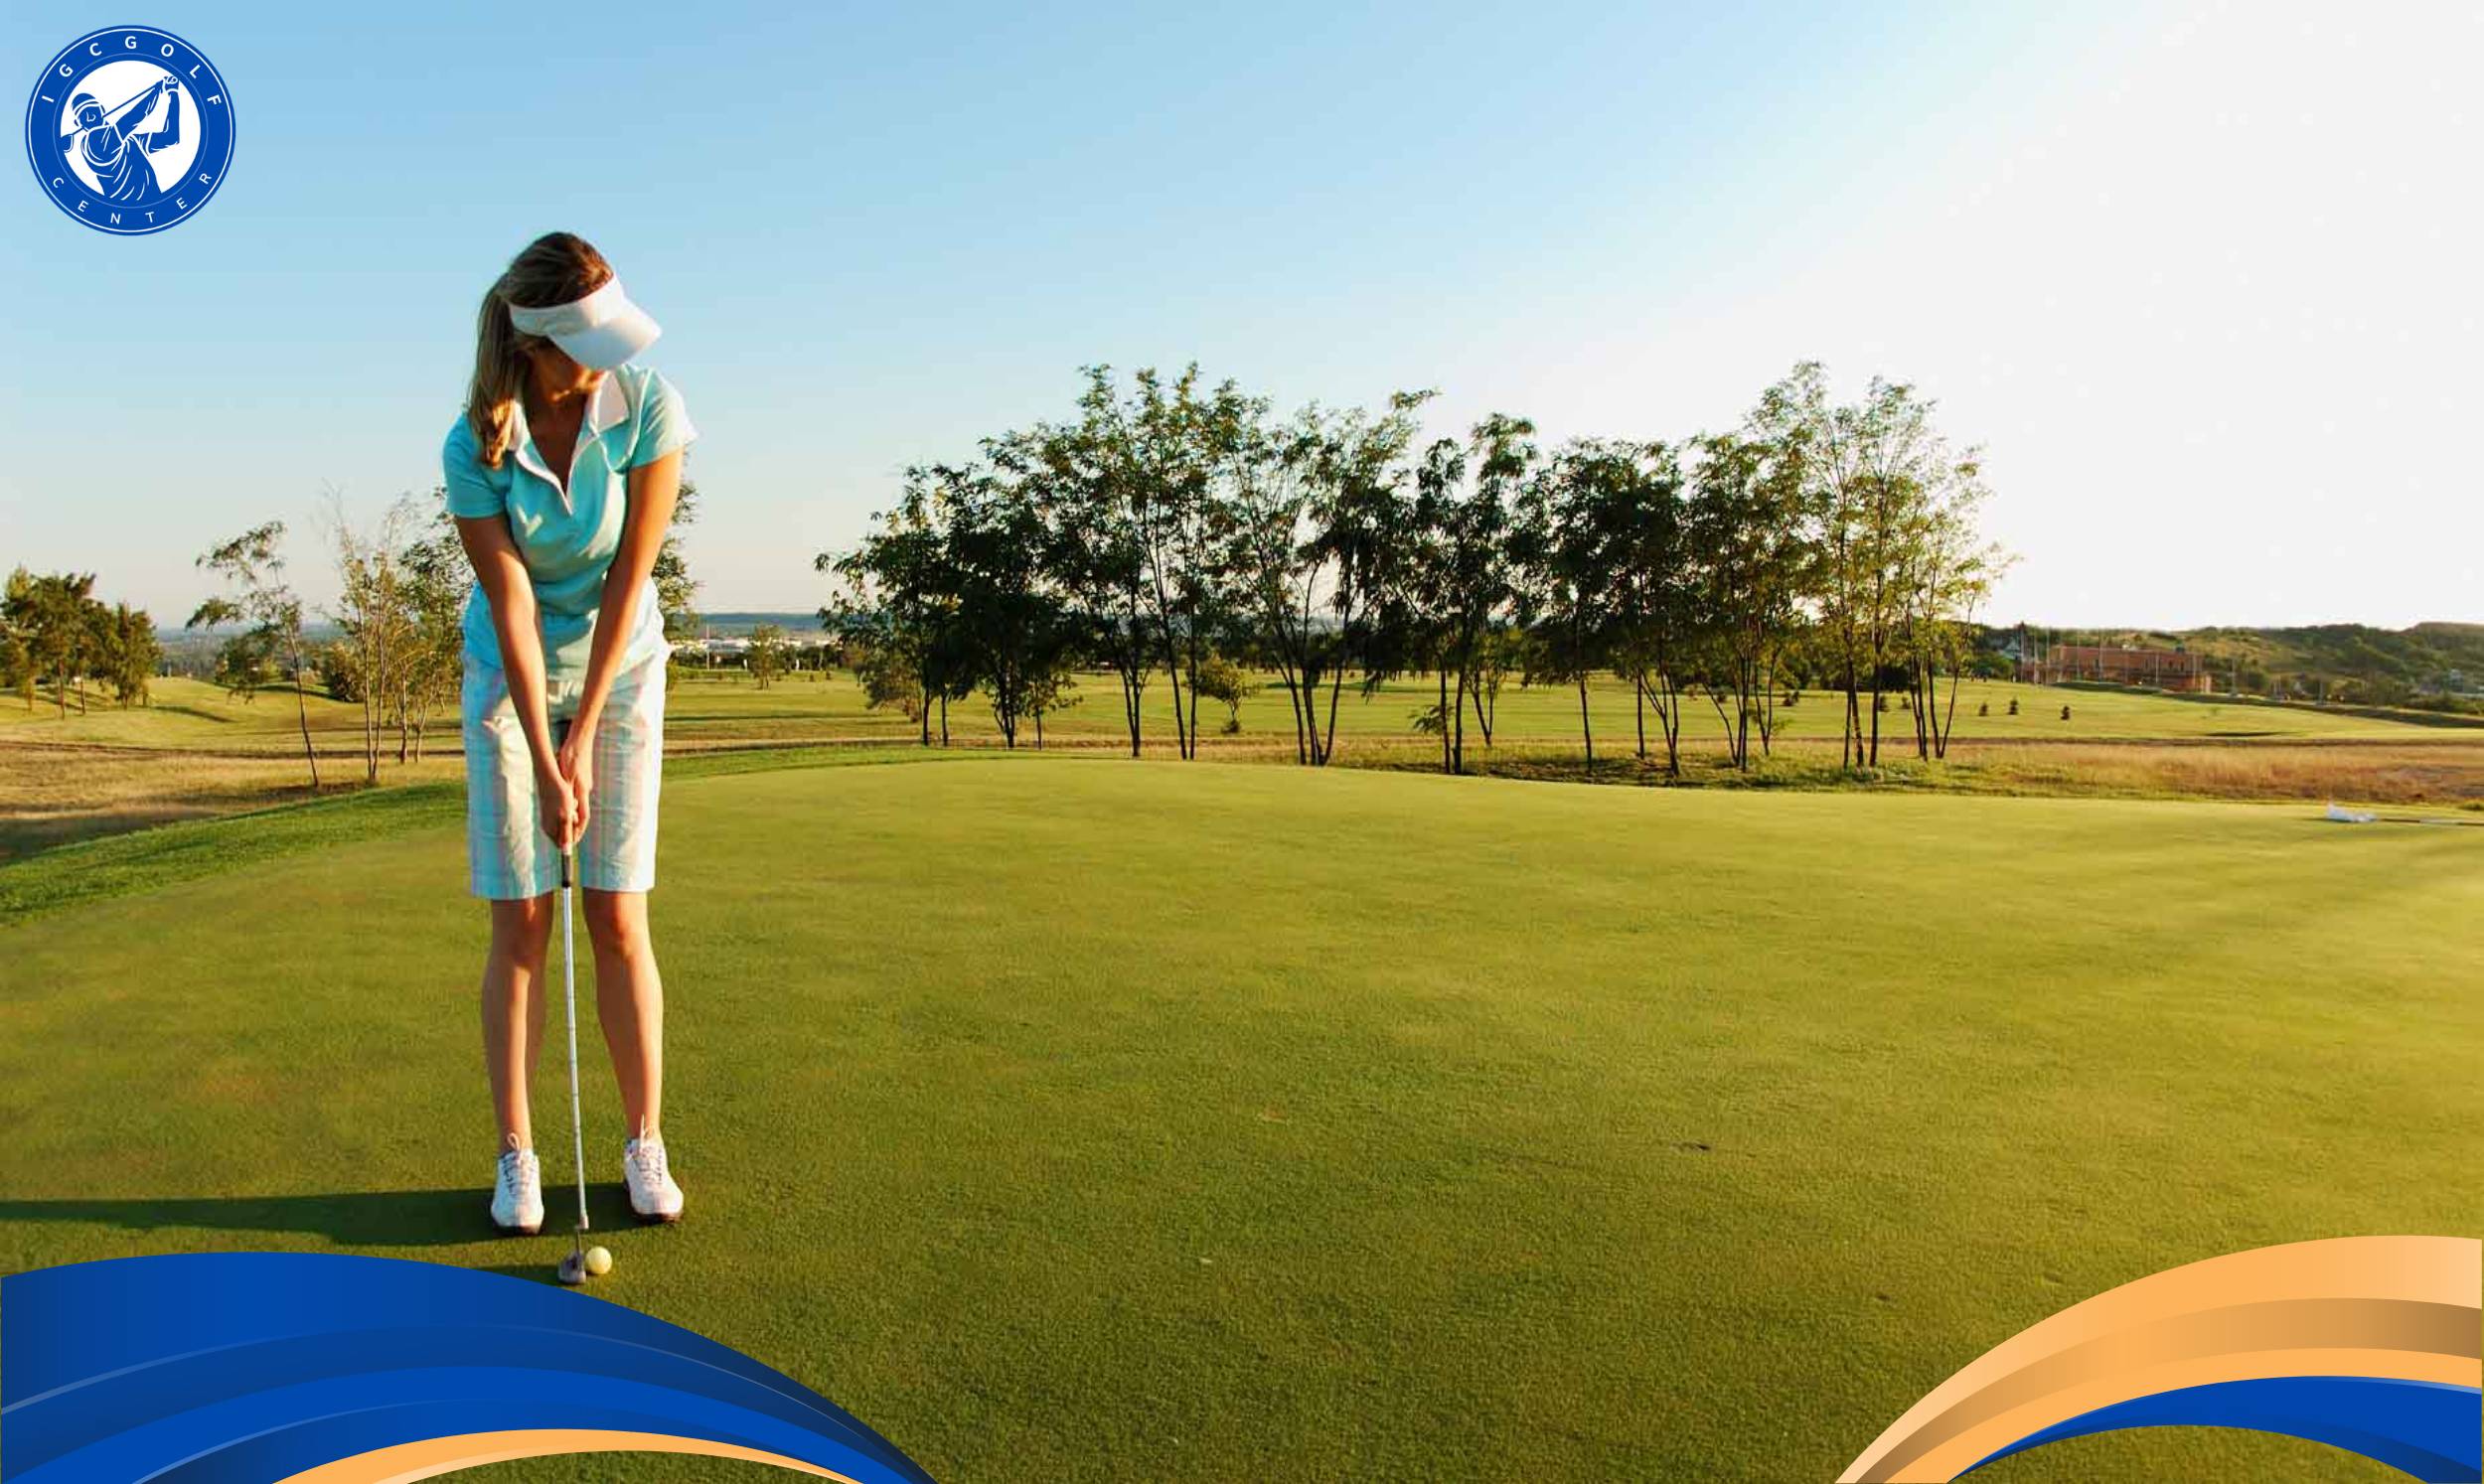 Làm sao để cải thiện kỹ năng putting golf